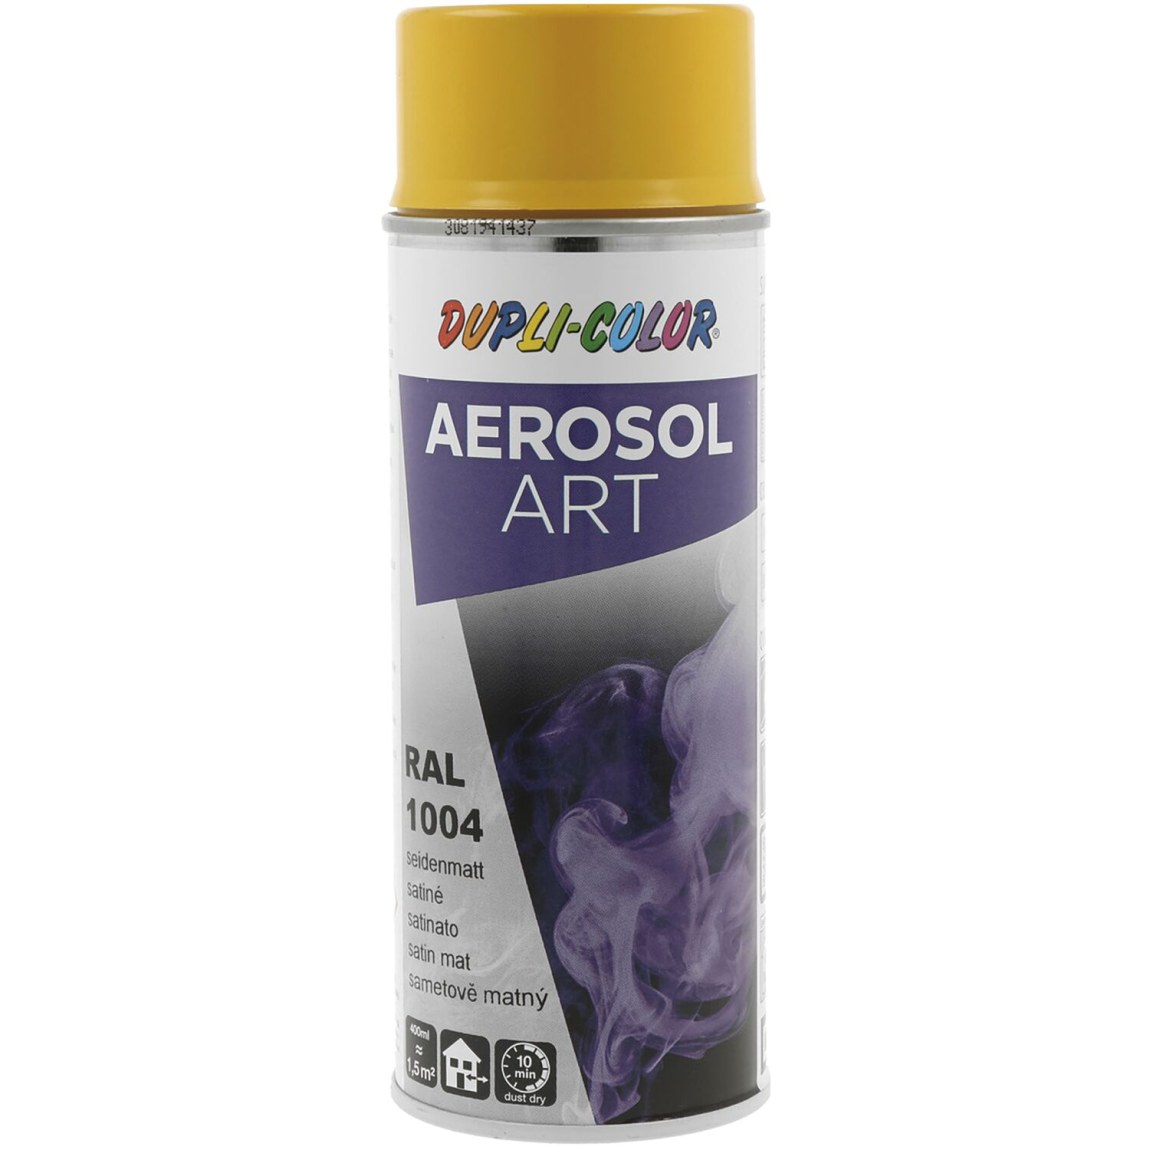 Dupli-Color Aerosol Art sprej 400 ml zlatožlutá hedv.mat / RAL 1004 - Železářství Chemicko-technické výrobky Technické aerosoly Lak ve Spreji